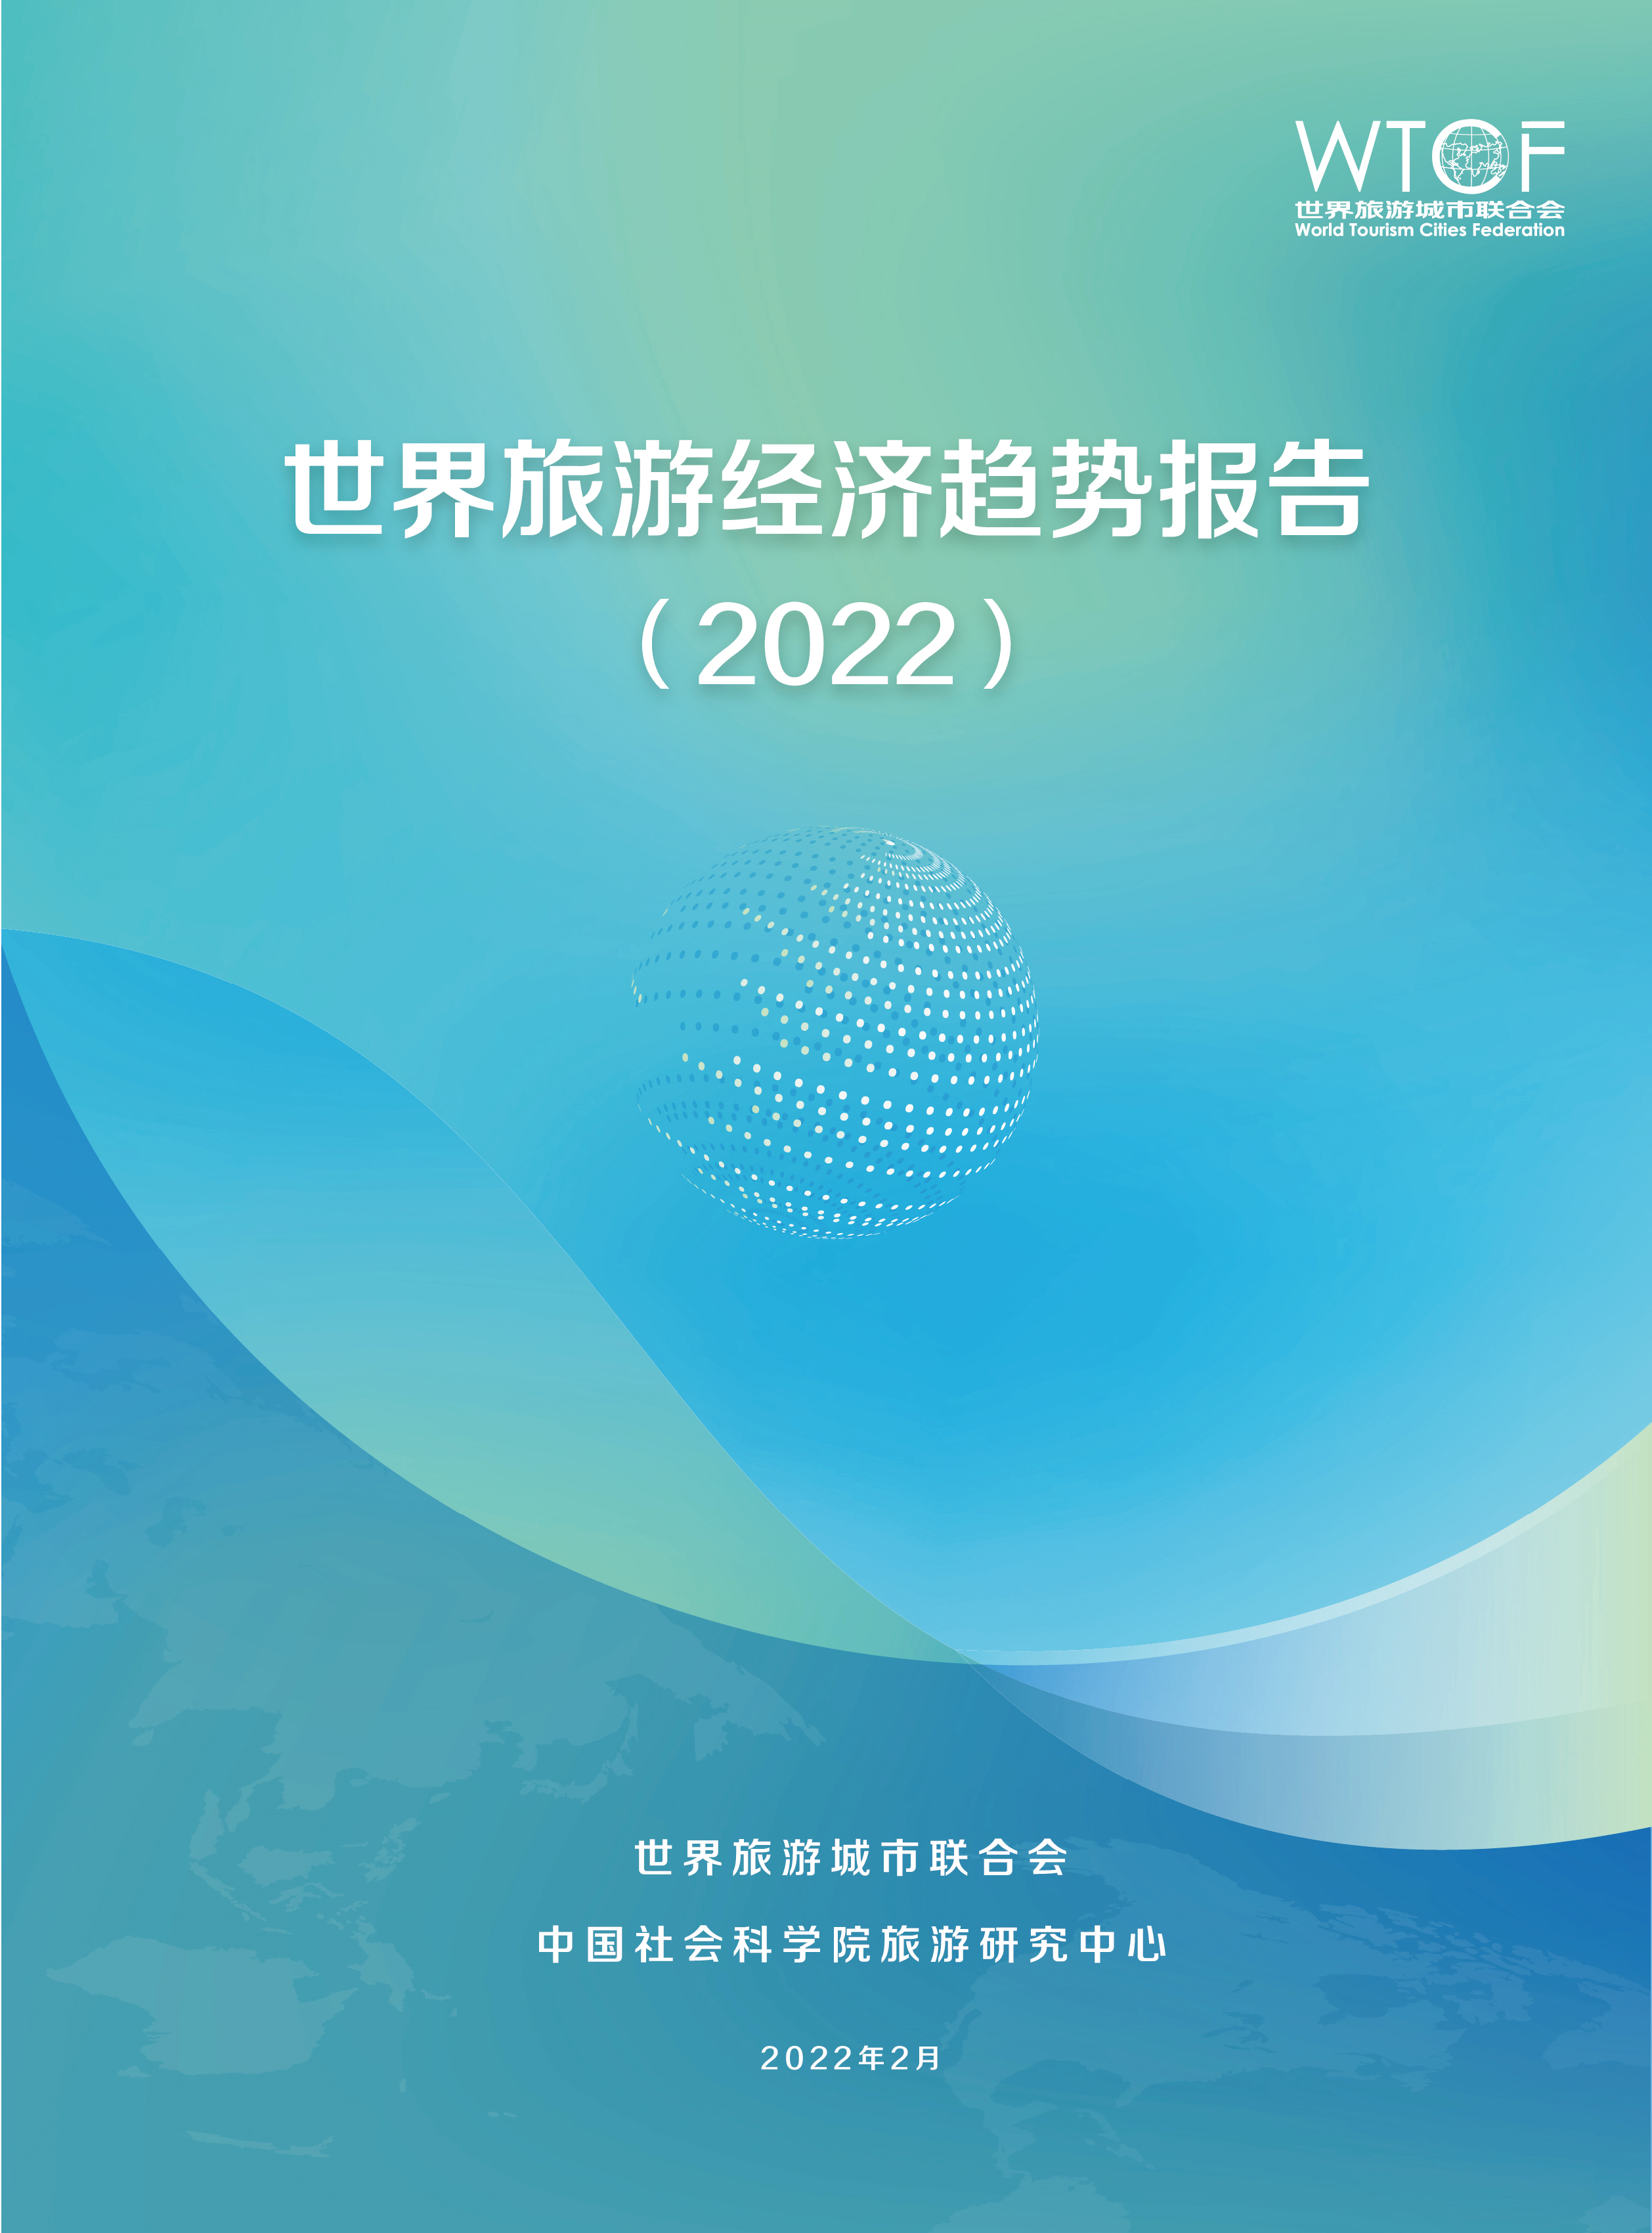 世界旅游經濟趨勢報告（2022）_fororder_《世界旅游經濟趨勢報告（2022）》簡版-20220301-中文_1